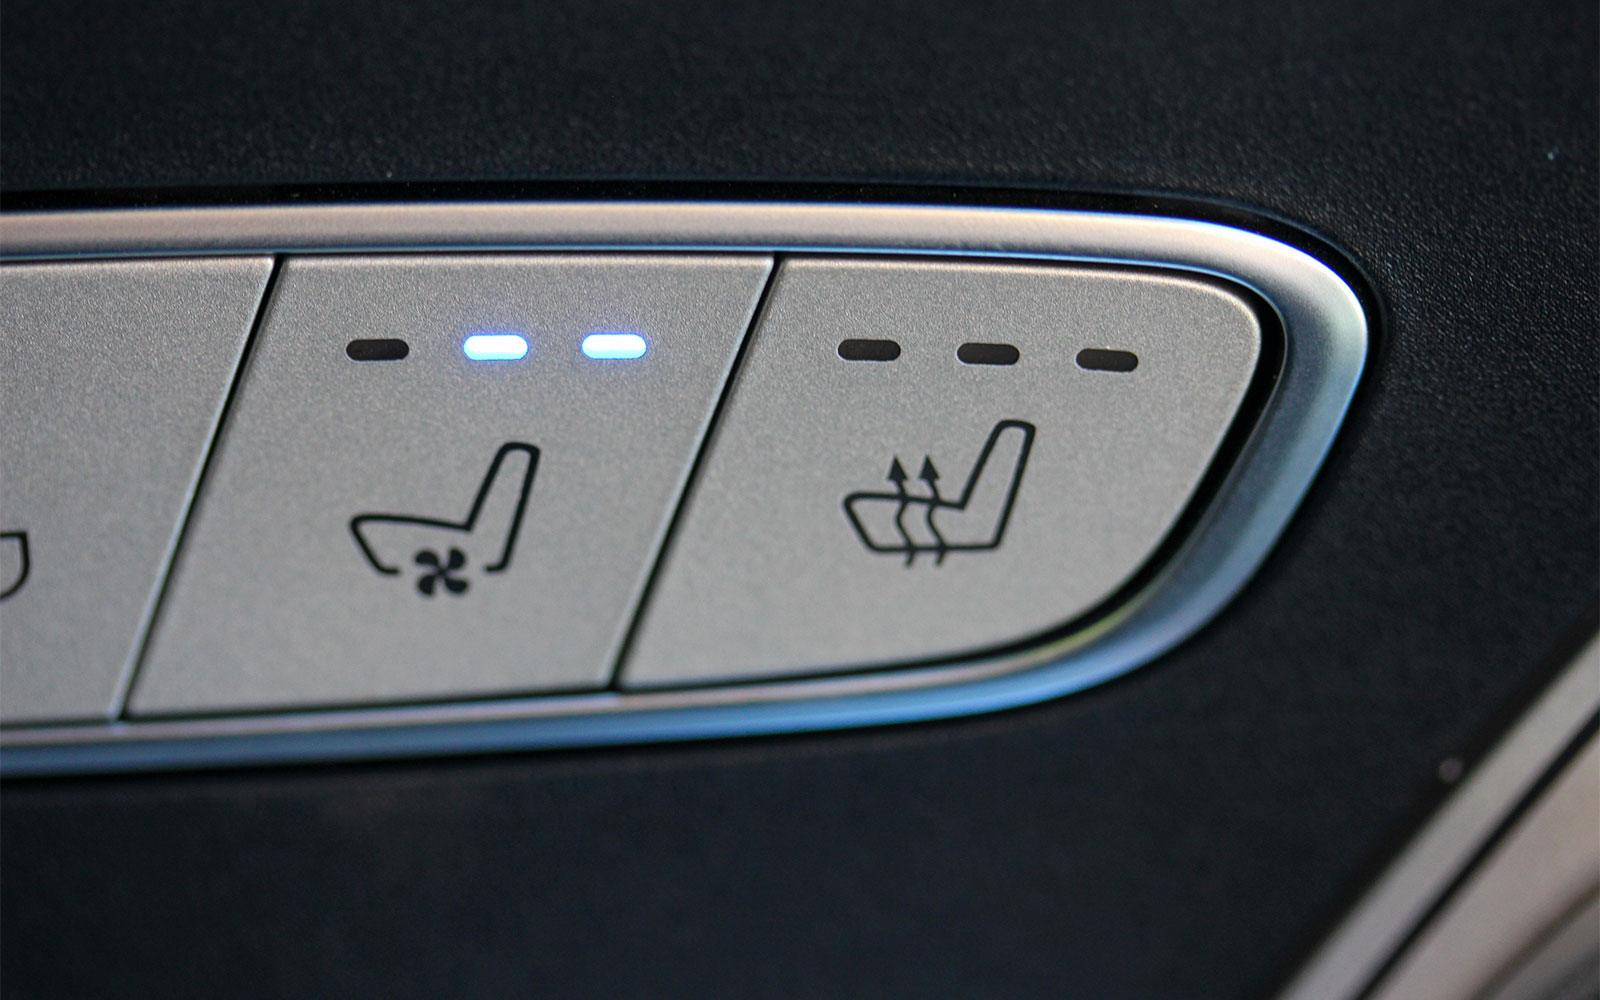 Car Seat Fan Back Ventilator Car Backrest Cooling Refrigeration